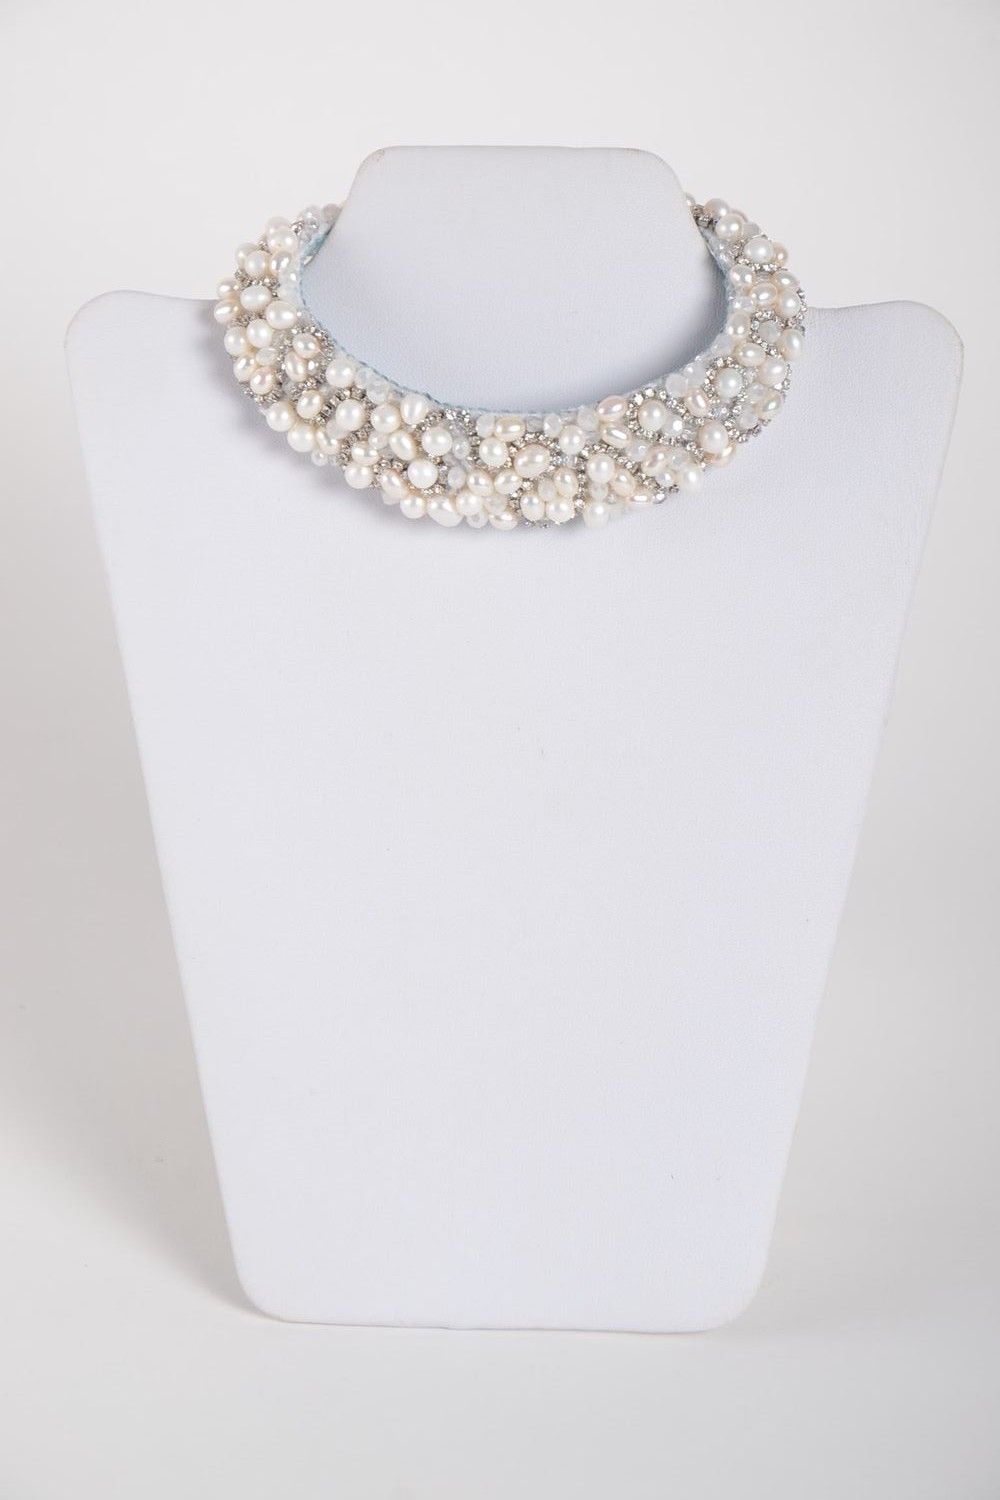 Handmade festive white necklace unusual elegant necklace stylish accessory photo 2